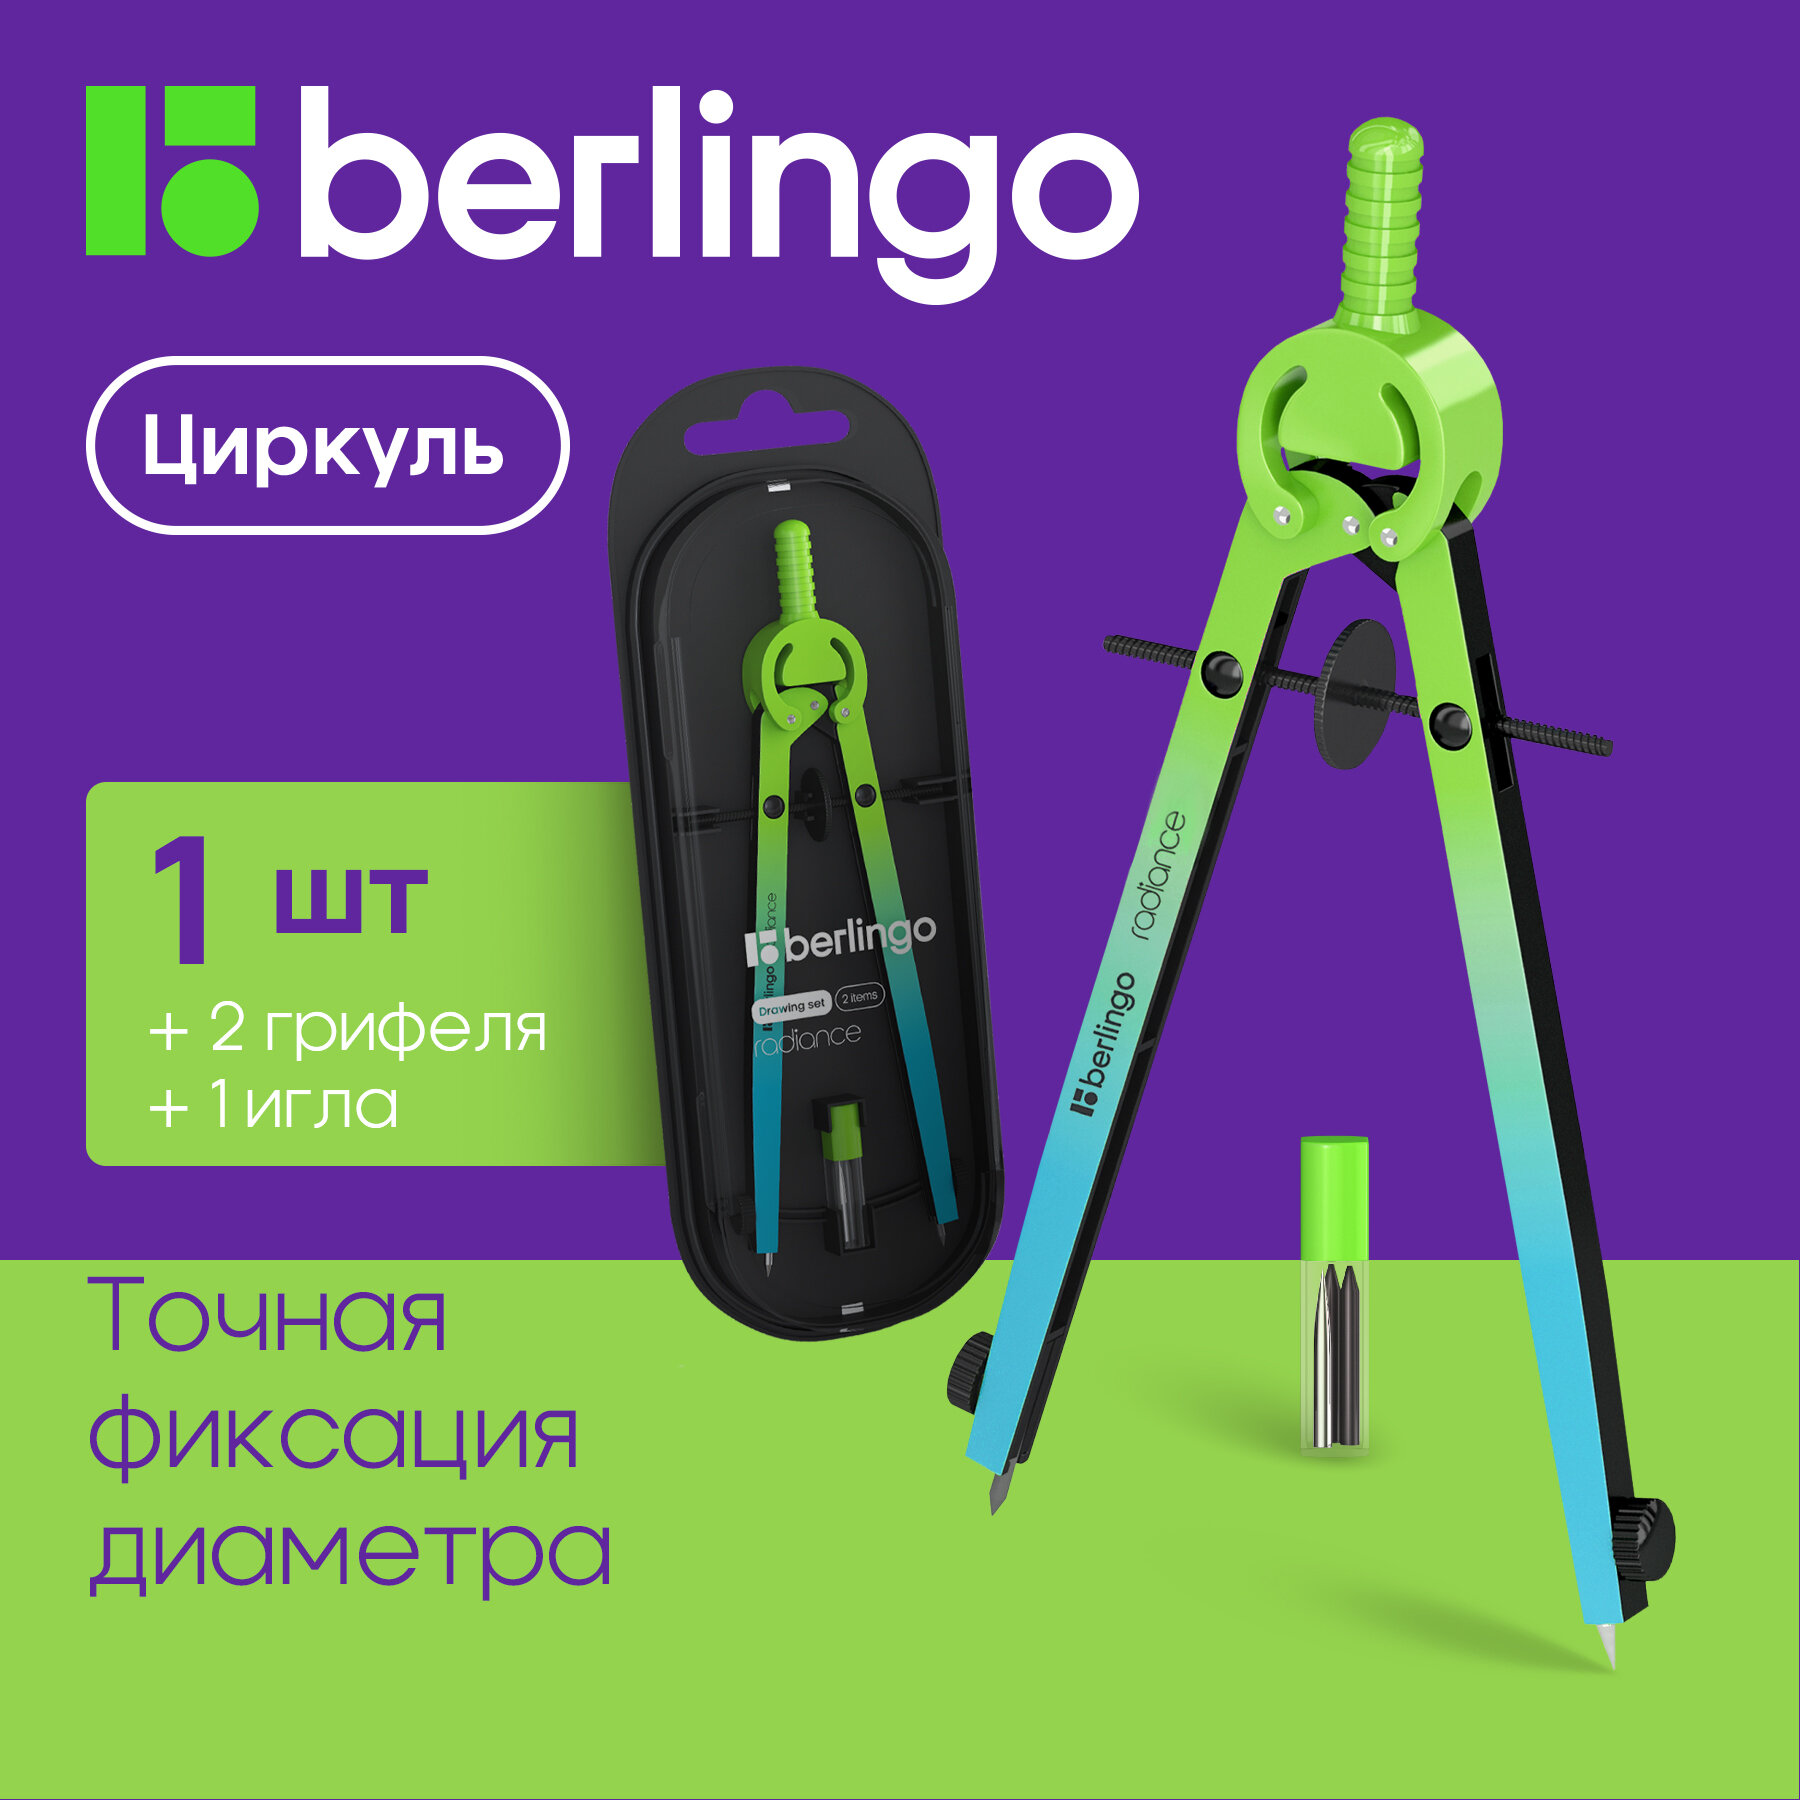 Готовальня Berlingo "Radiance", 2 предмета, циркуль 170мм, розовый/голубой градиент, пластиковый футляр